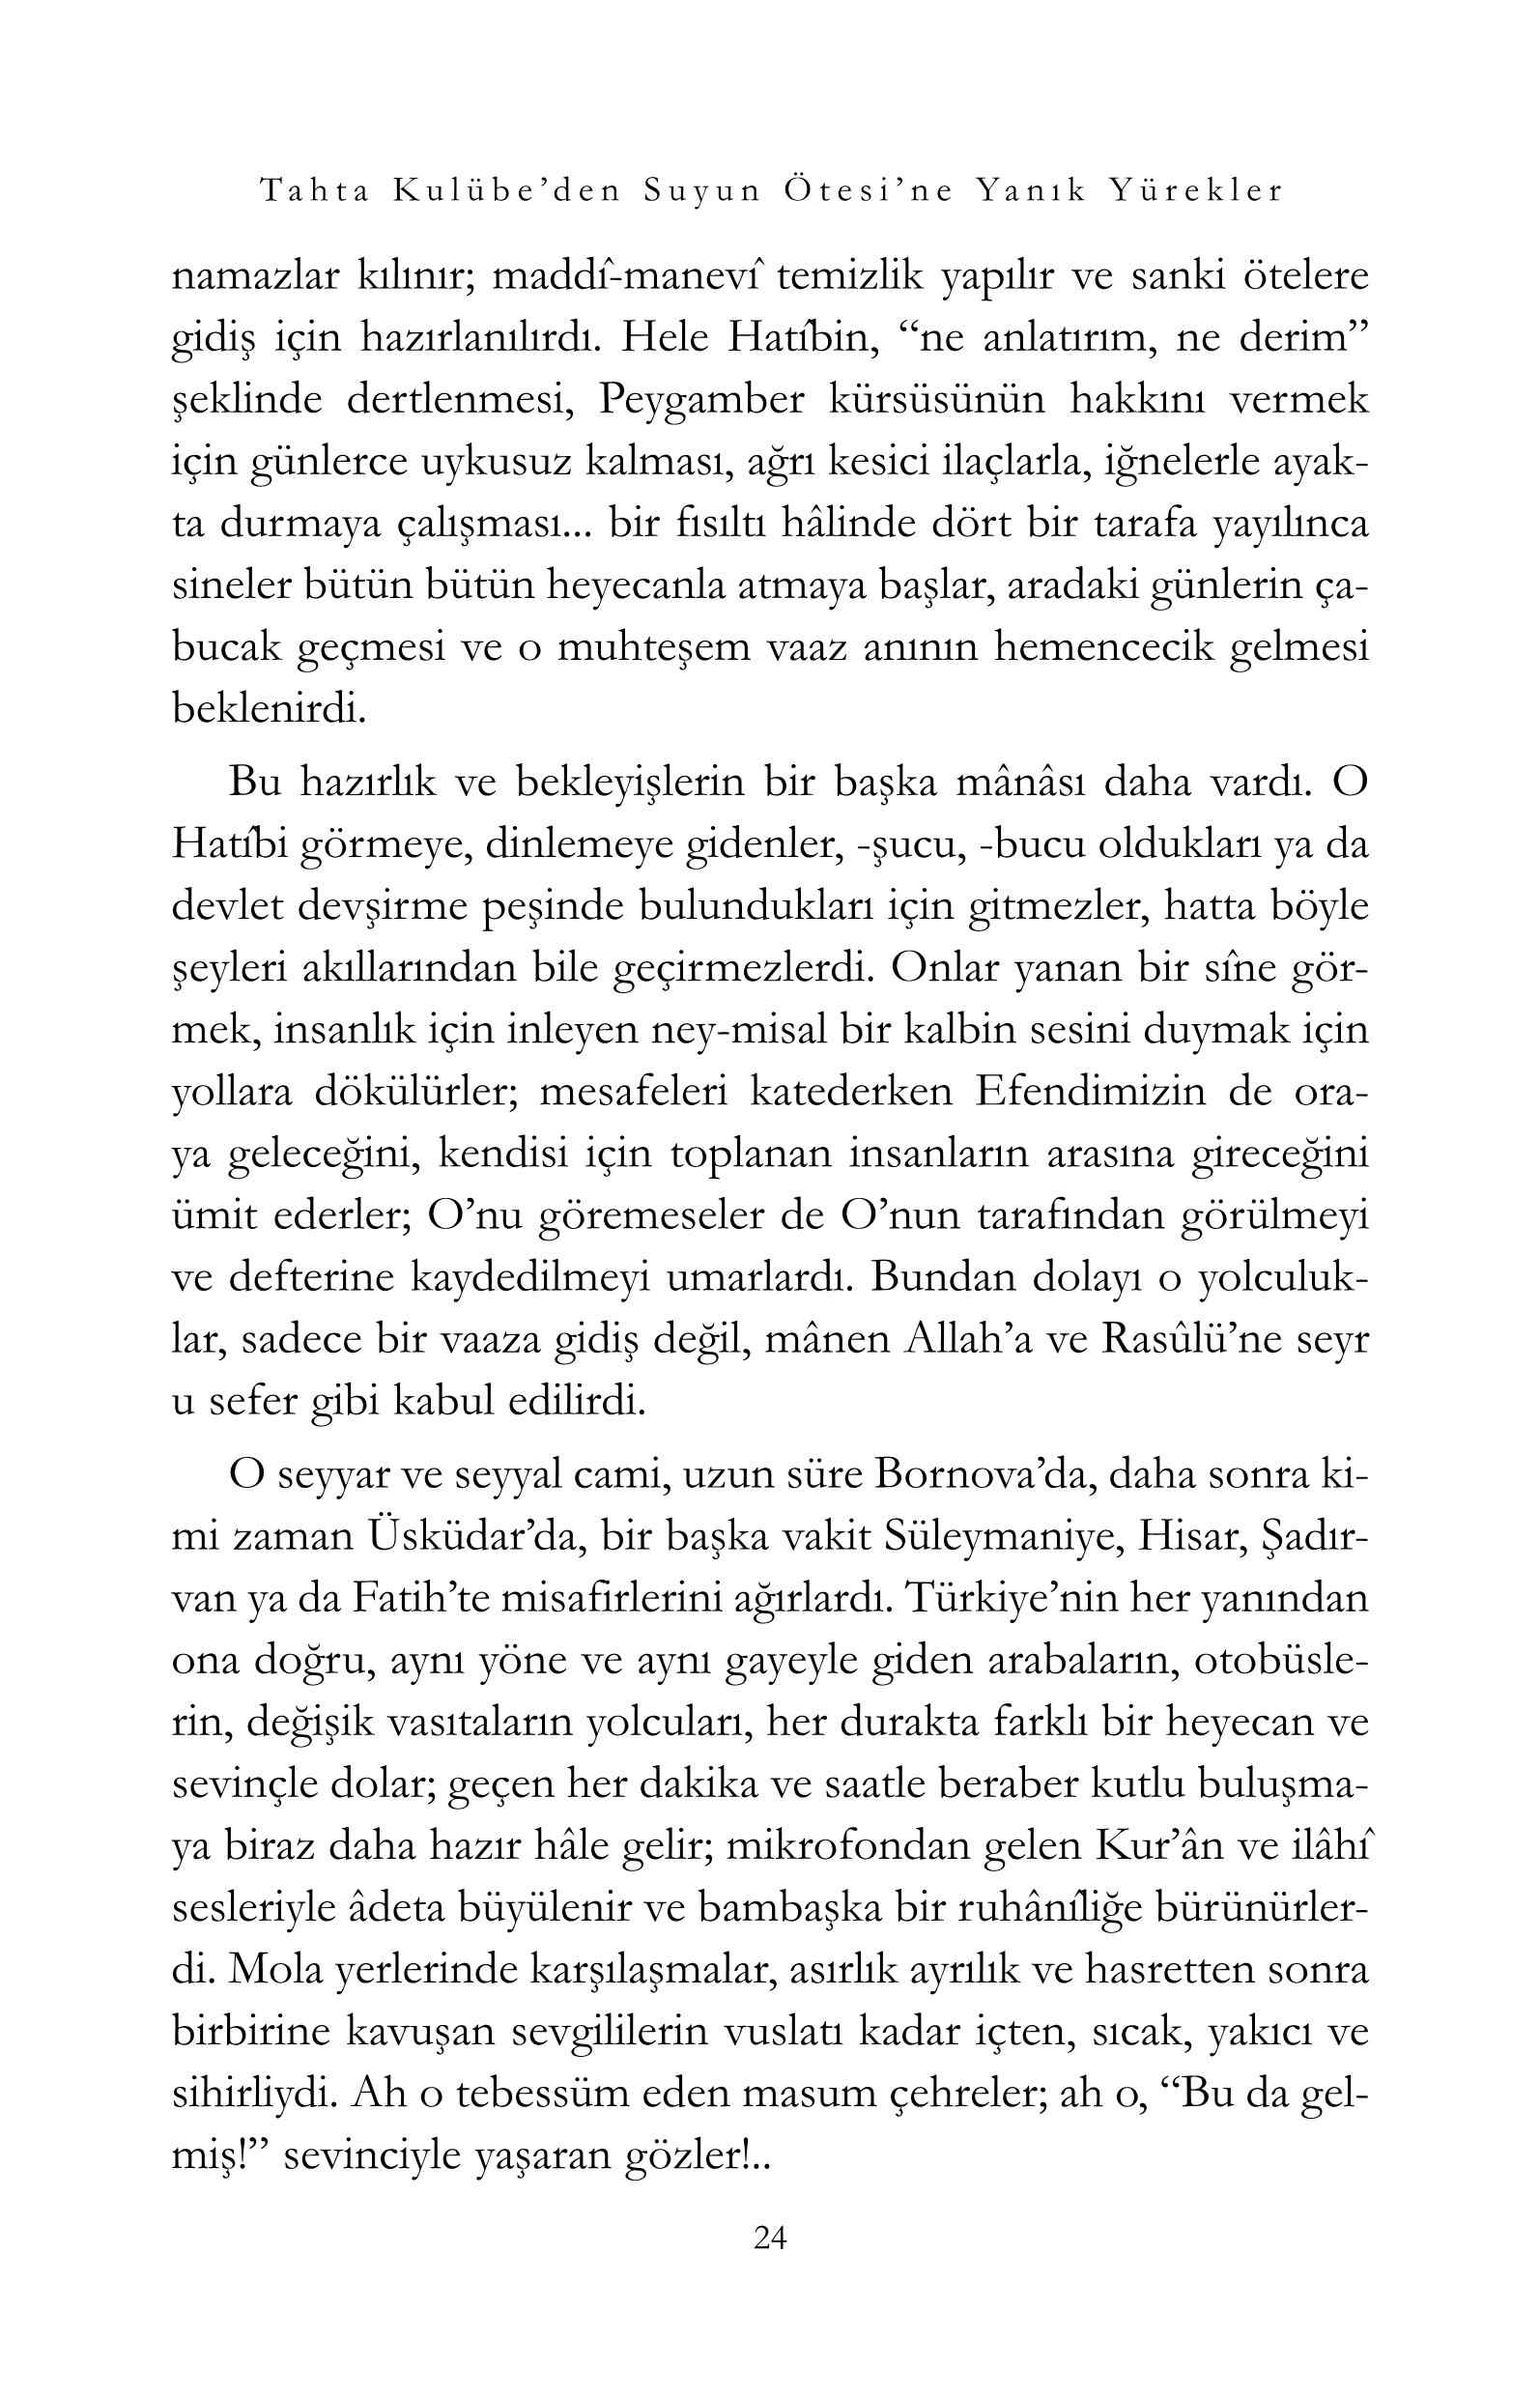 Osman Simsek -Yanik Yurekler - Tahta Kulubeden Suyun Otesine - IsikYayinlari.pdf, 221-Sayfa 